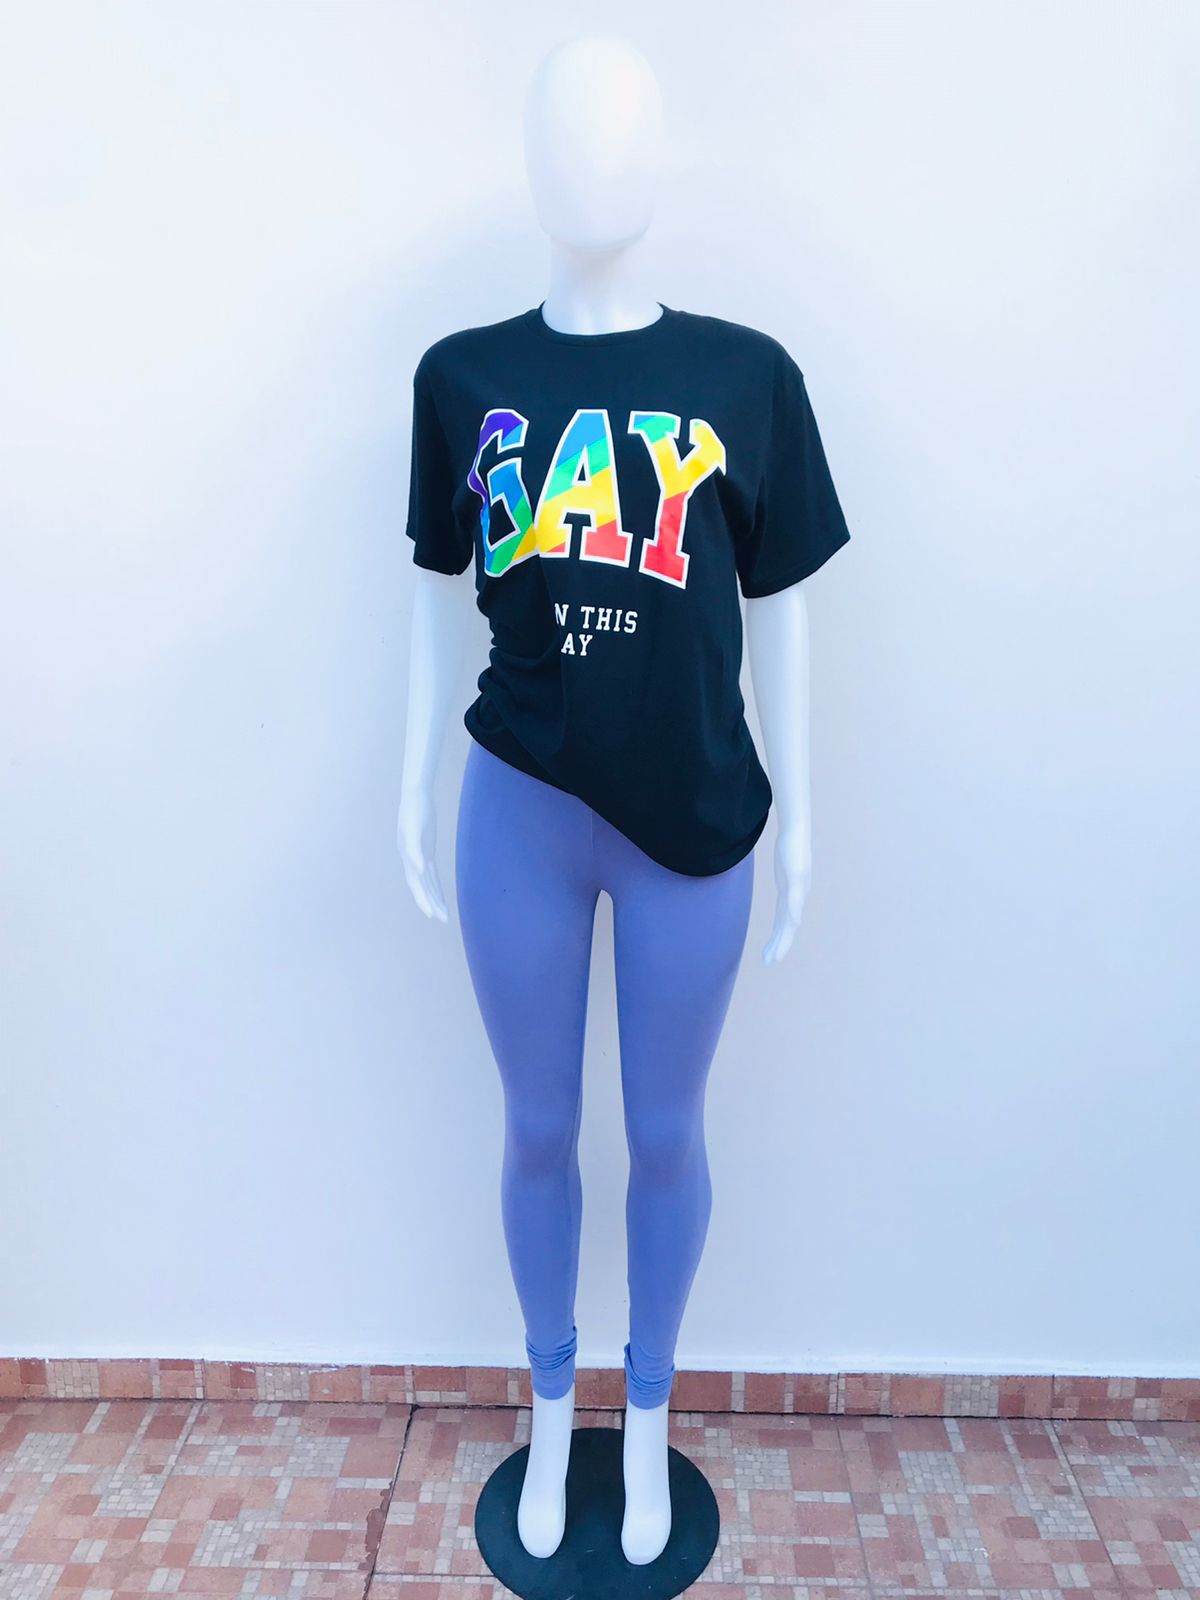 T-shirt Rue21 original, negro con letras GAY BORN THIS WAY (Gay. Nacida asi)